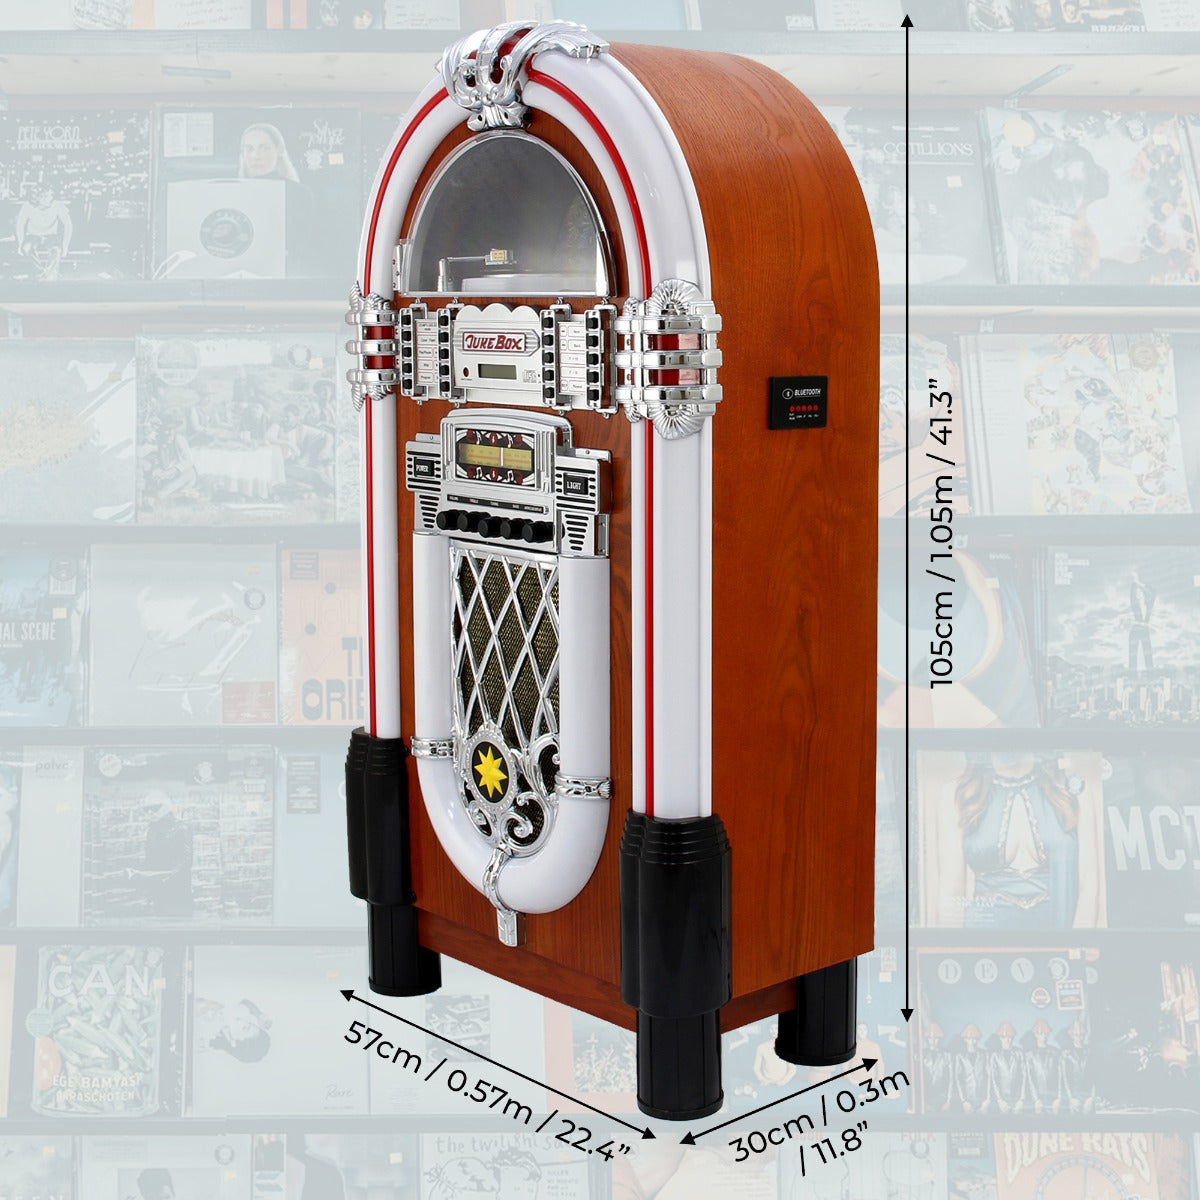 Retro Style Illuminated Jukebox Sound System